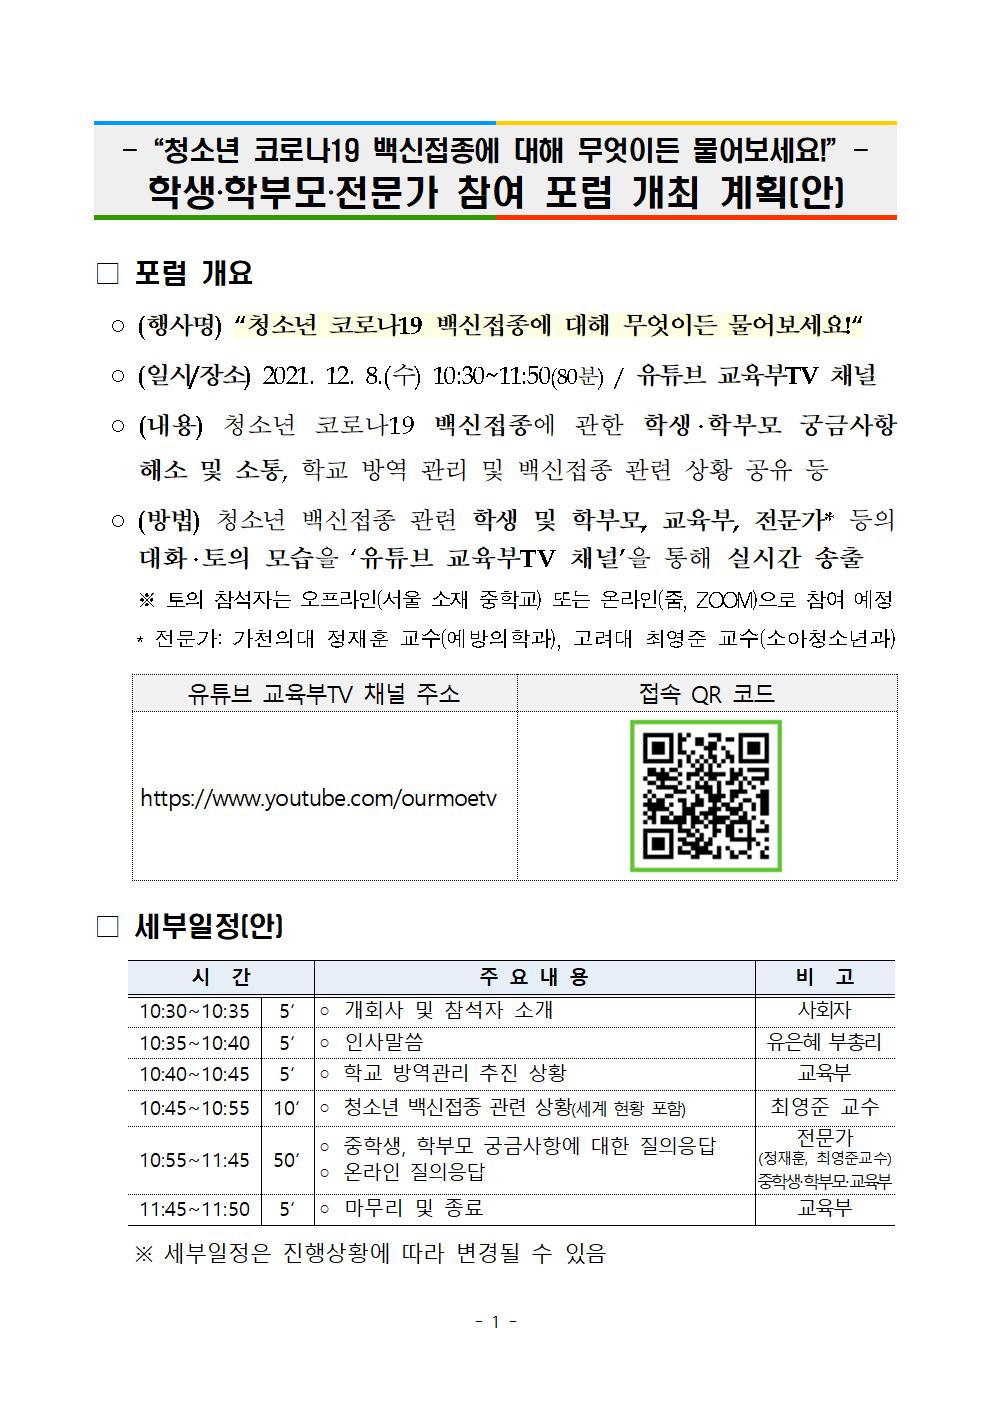 청소년 코로나19 백신접종 관련 포럼 개최 계획(안) 안내 (1)001